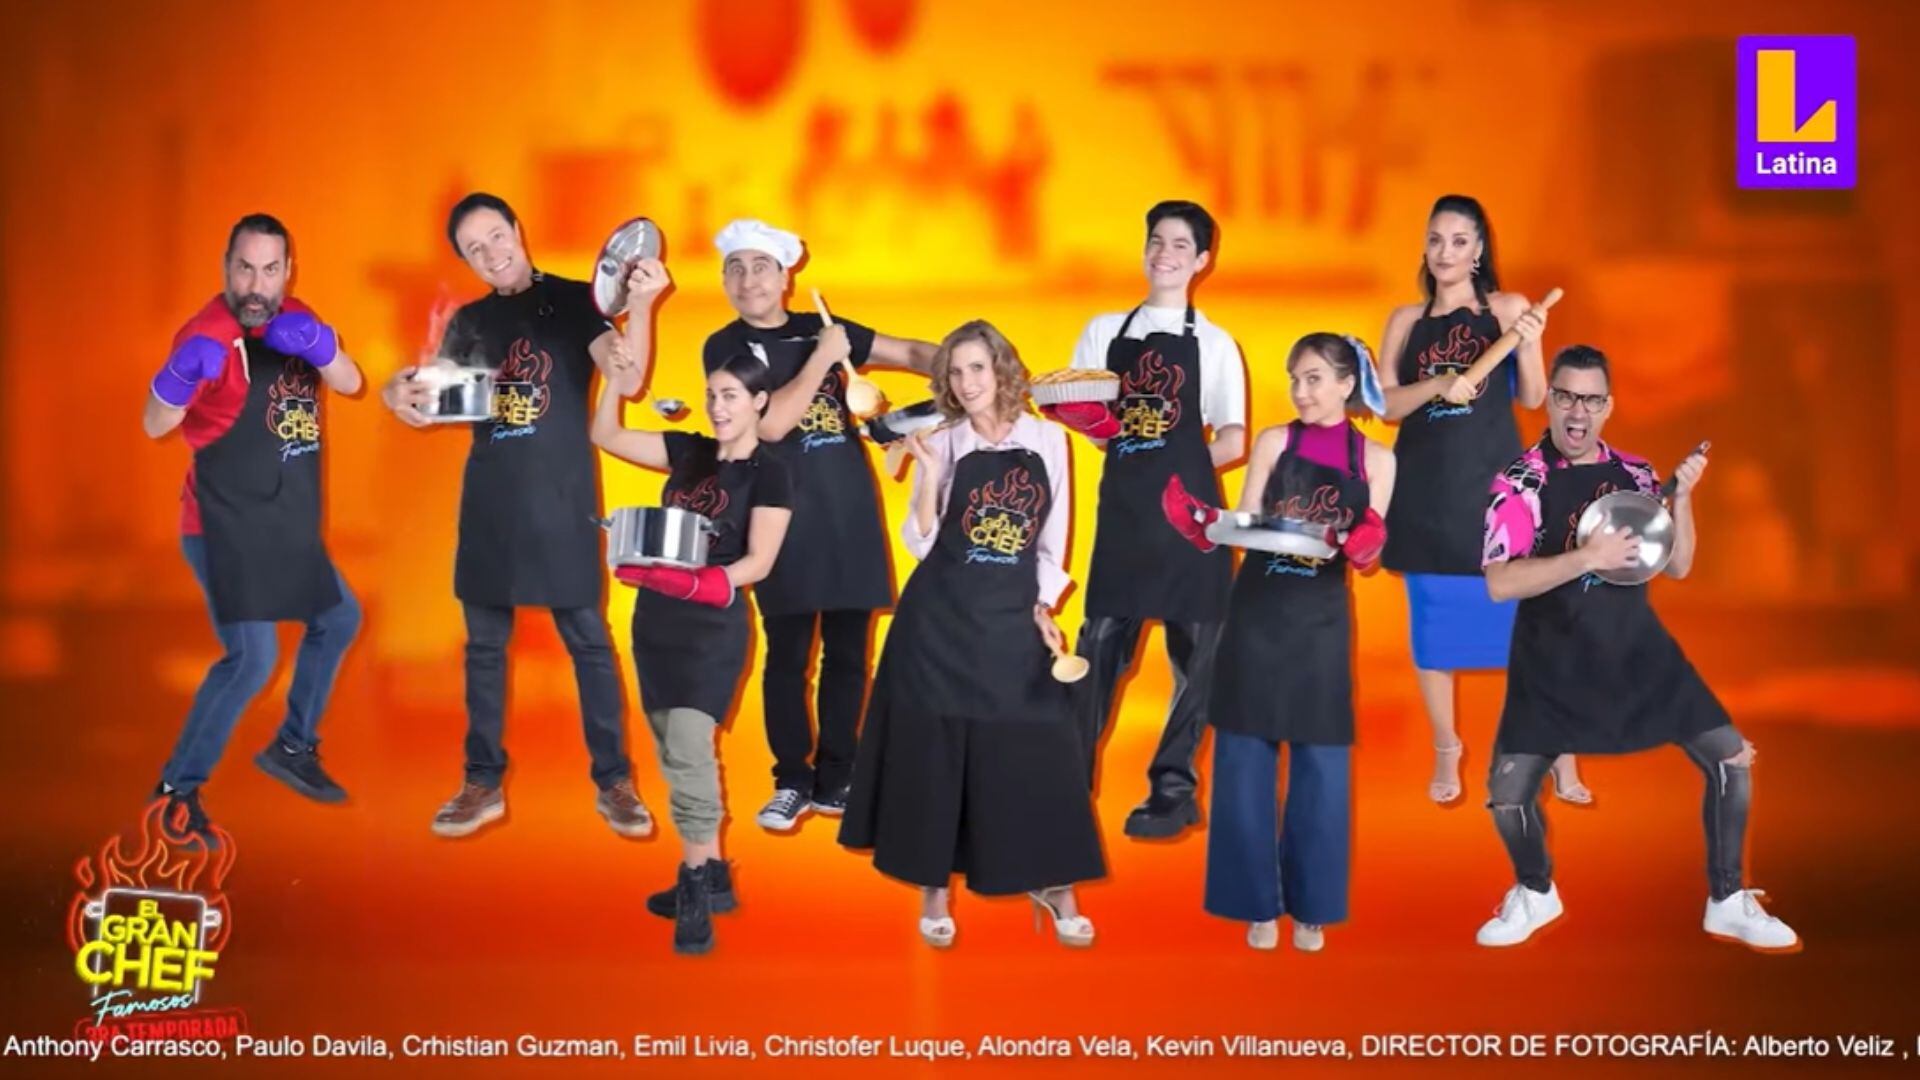 Nueve participantes permanecen en 'El Gran Chef Famosos'. Créditos - Latina TV